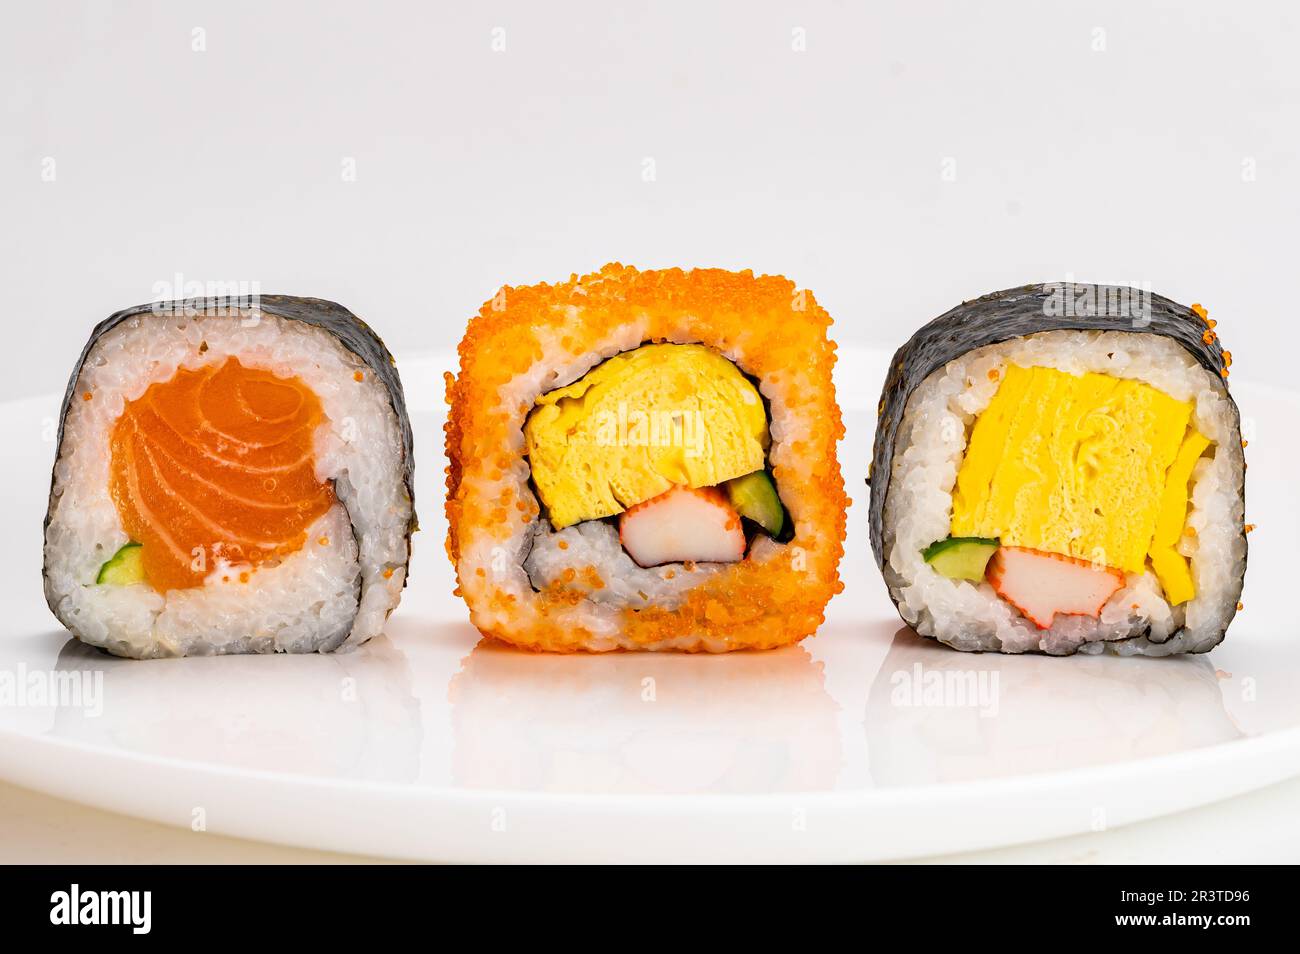 Varios rollos de sushi sashimi de estilo japonés casero, algas nori, pescado salmón, en placa de cerámica blanca aislada sobre fondo blanco. Foto de stock